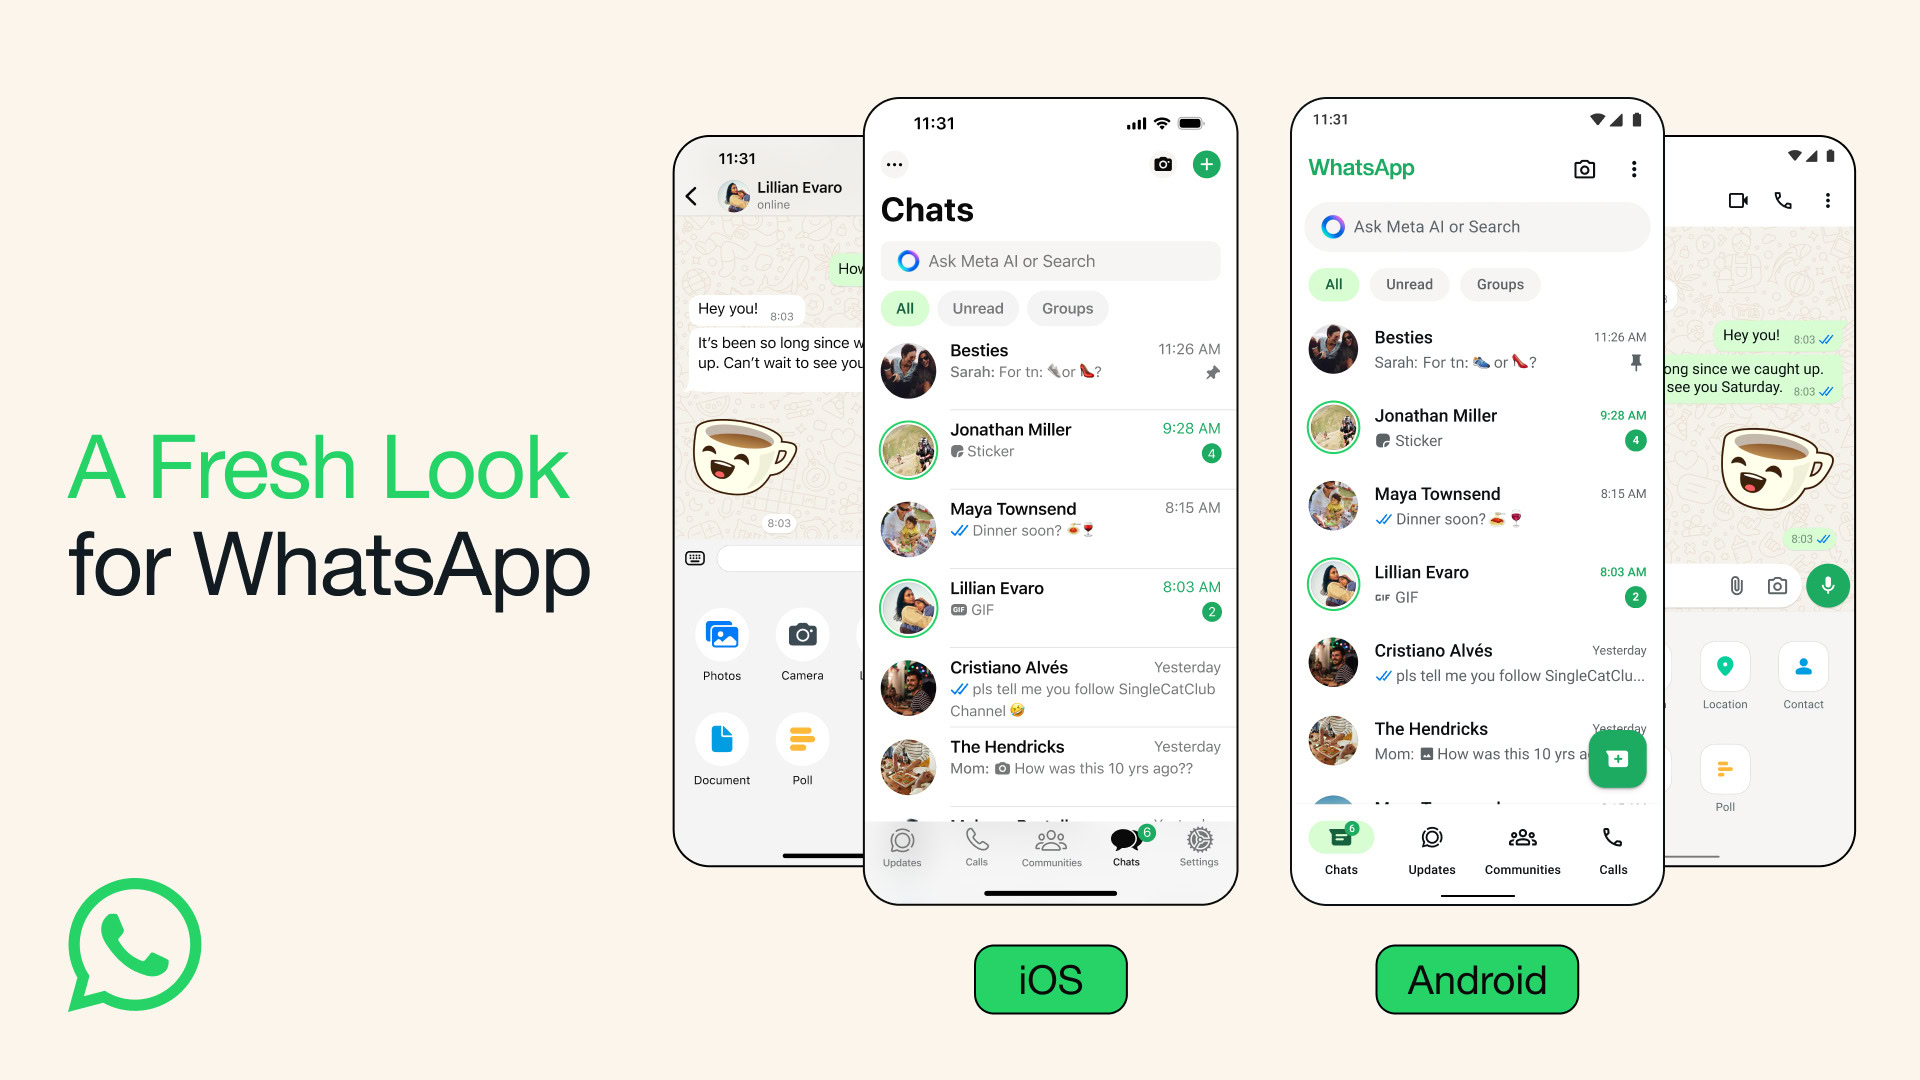 WhatsApp претерпевает серьезные изменения, вводит новые цвета, значки и улучшенный темный режим.